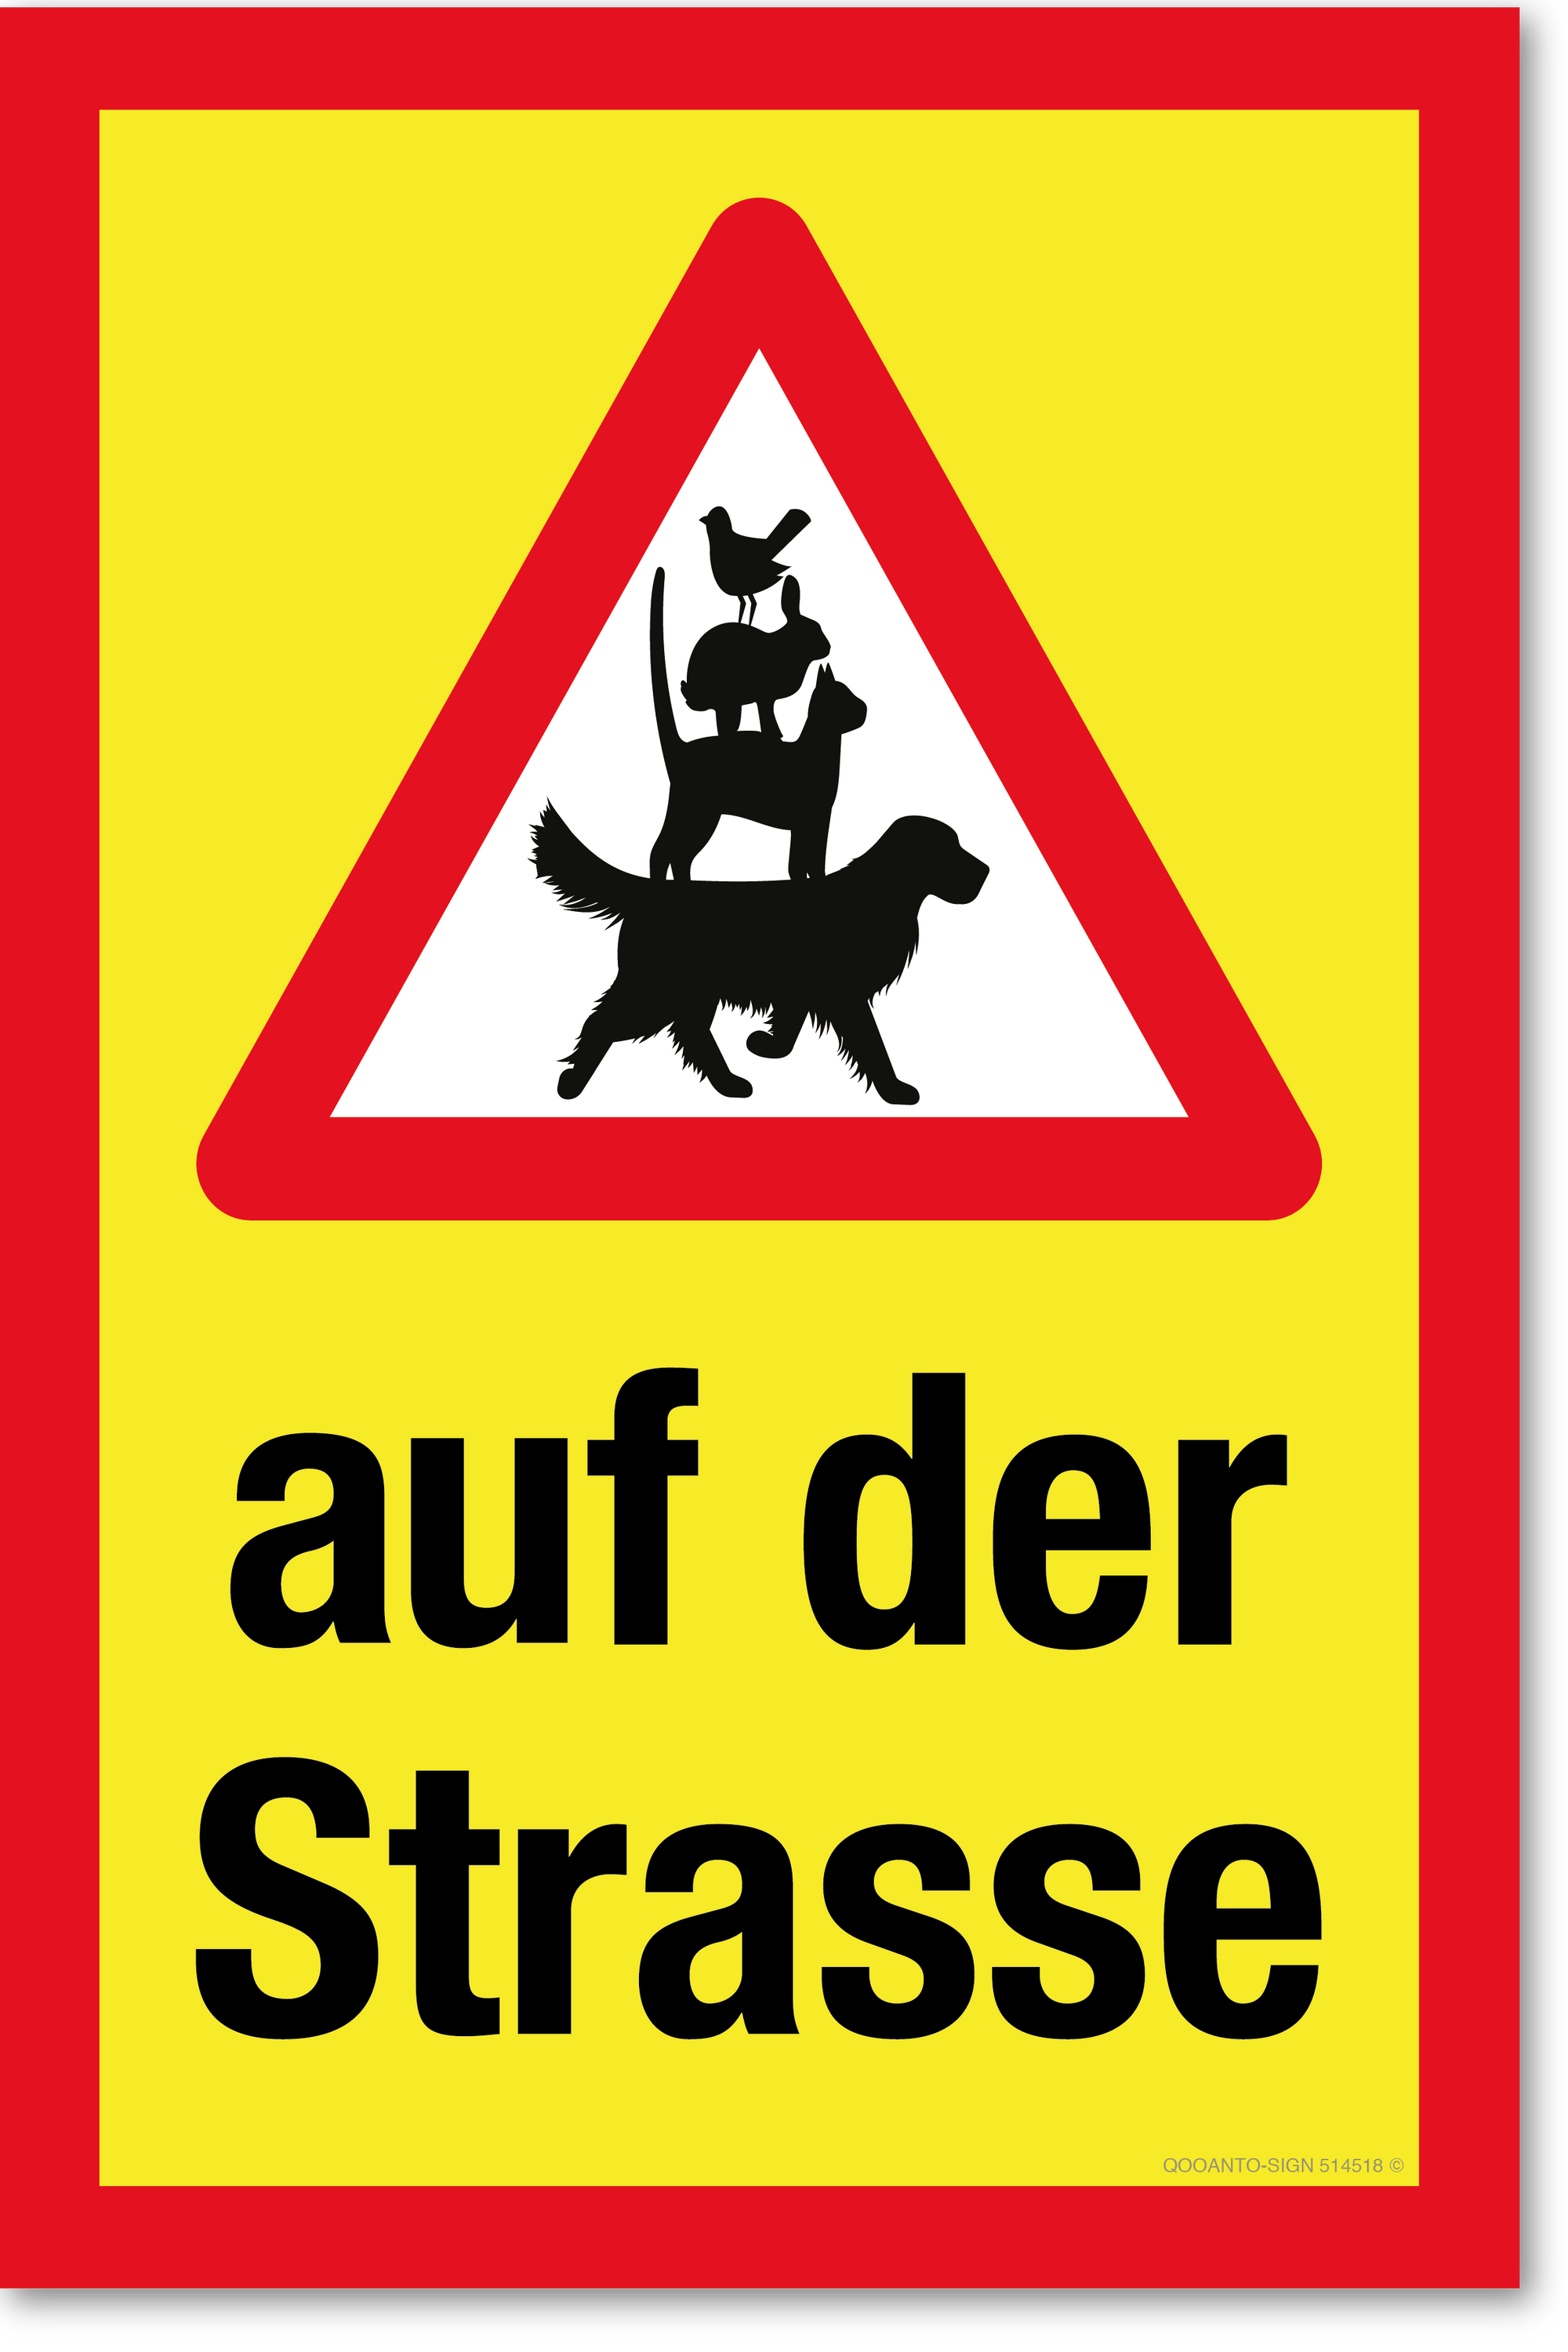 Warndreieck mit Haustiere - auf der Strasse, gelb, Schild oder Aufkleber